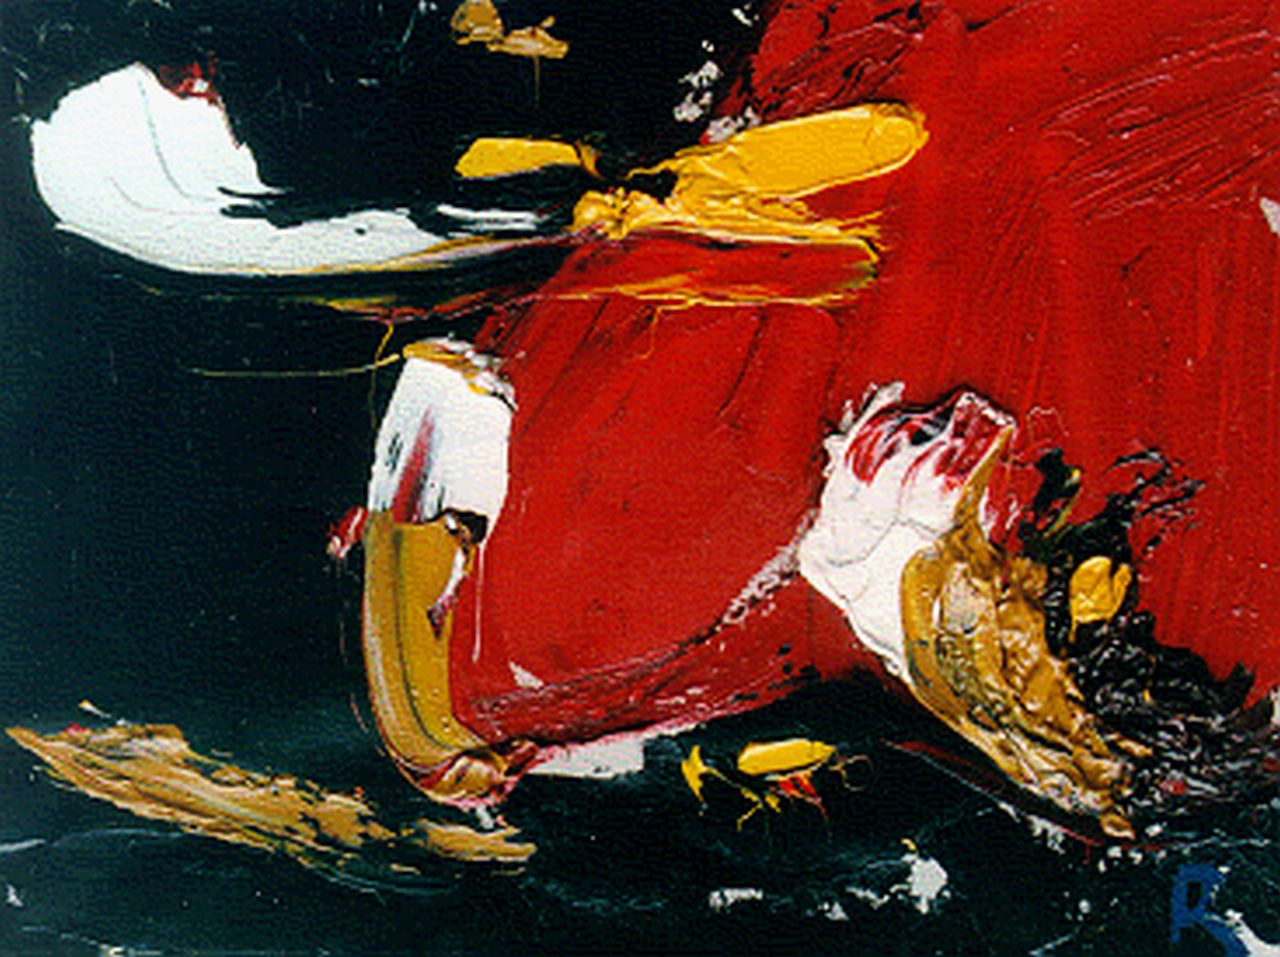 Romijn G.A.M.  | Gustavus Adrianus Maria 'Gust' Romijn, Abstracte compositie, olieverf op doek 30,0 x 40,0 cm, gesigneerd rechtsonder met 'R'